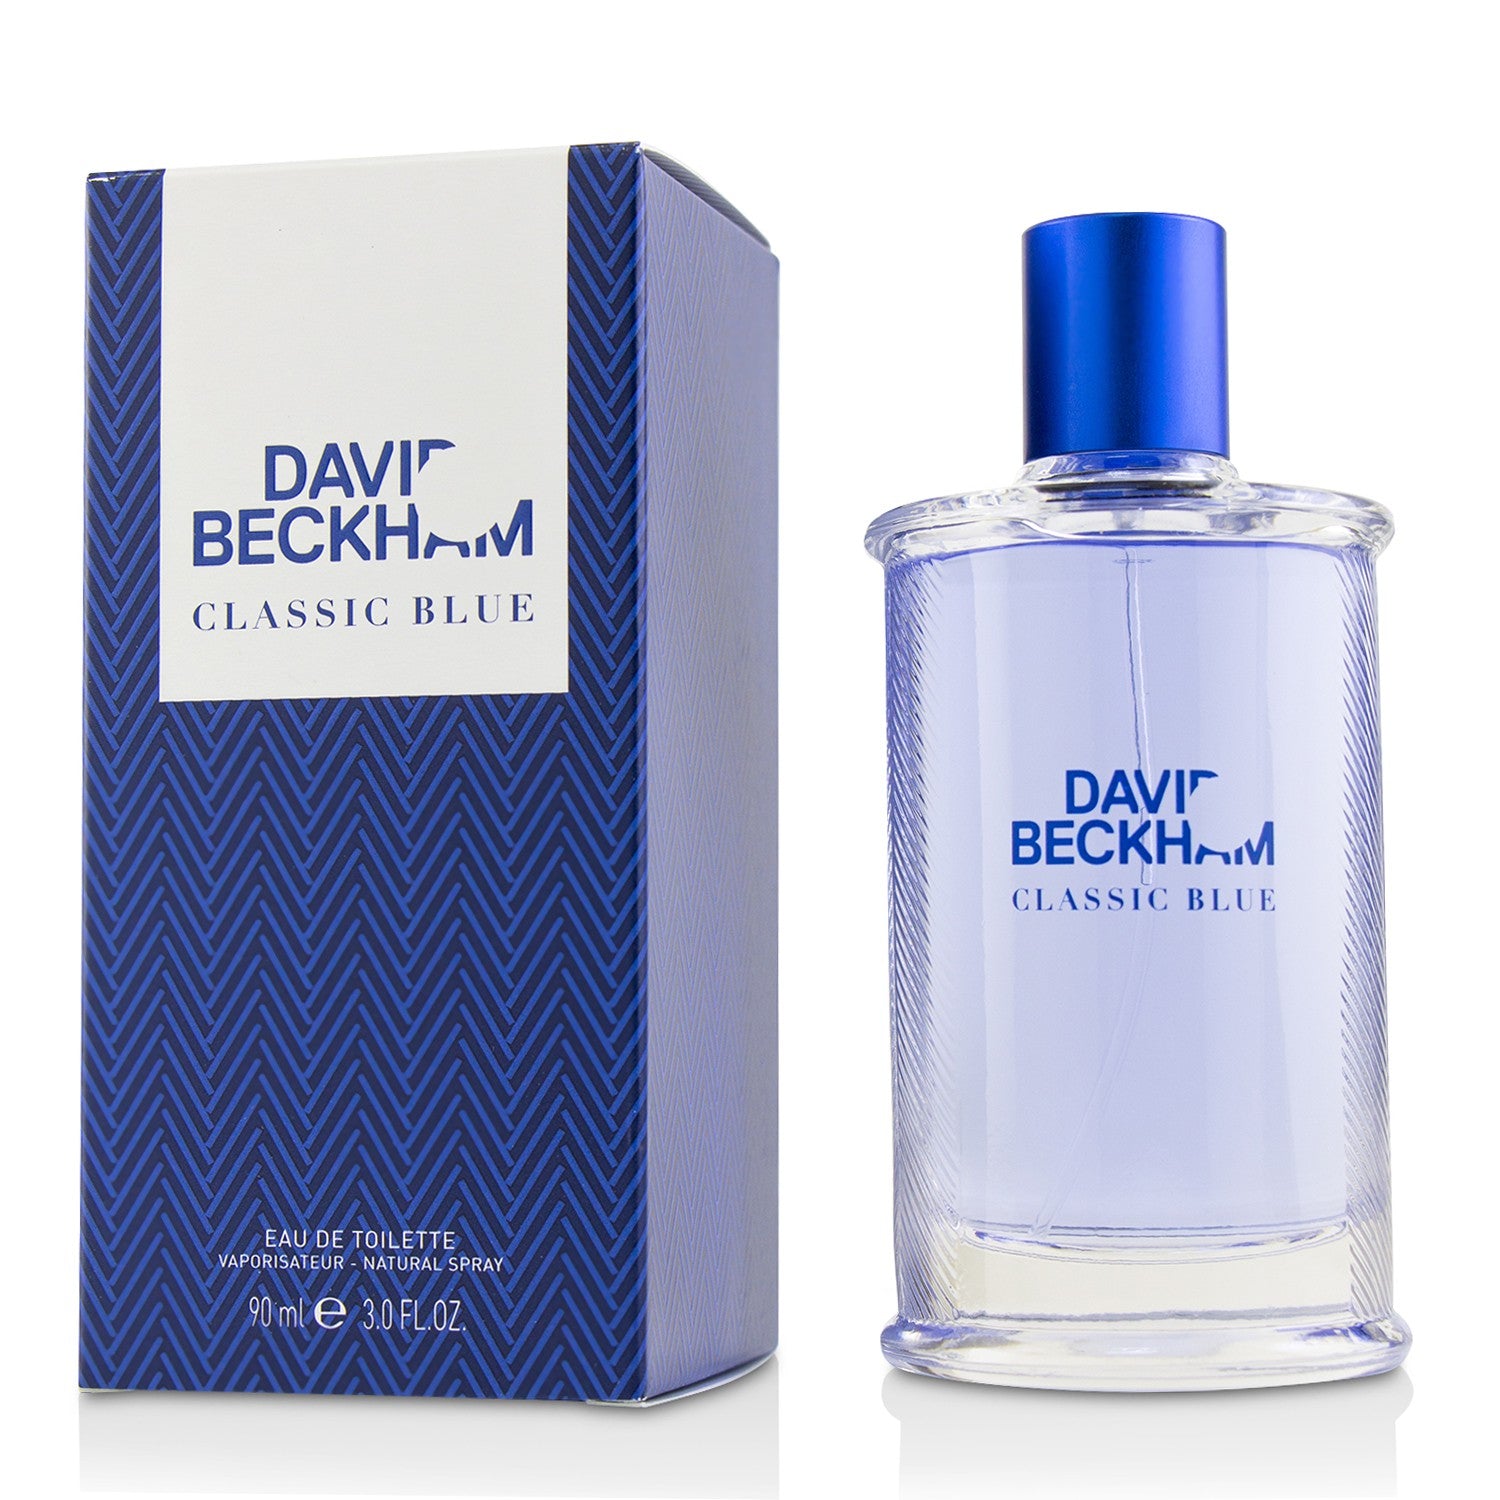 Classic Blue De Toilette Spray for Sale David Beckham, Men's Fragrance, Buy – Author